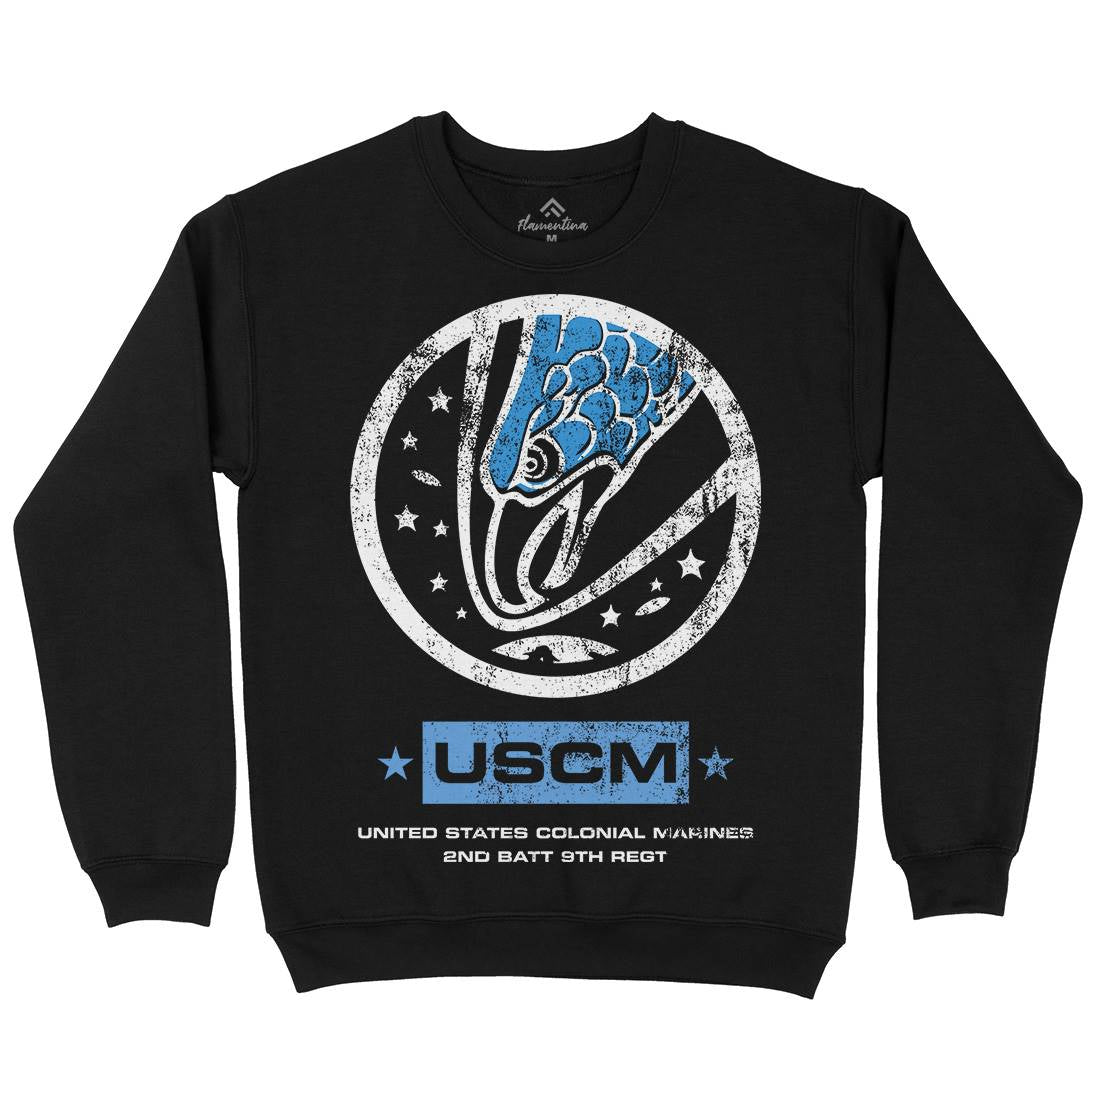 Uscm Kids Crew Neck Sweatshirt Space D135